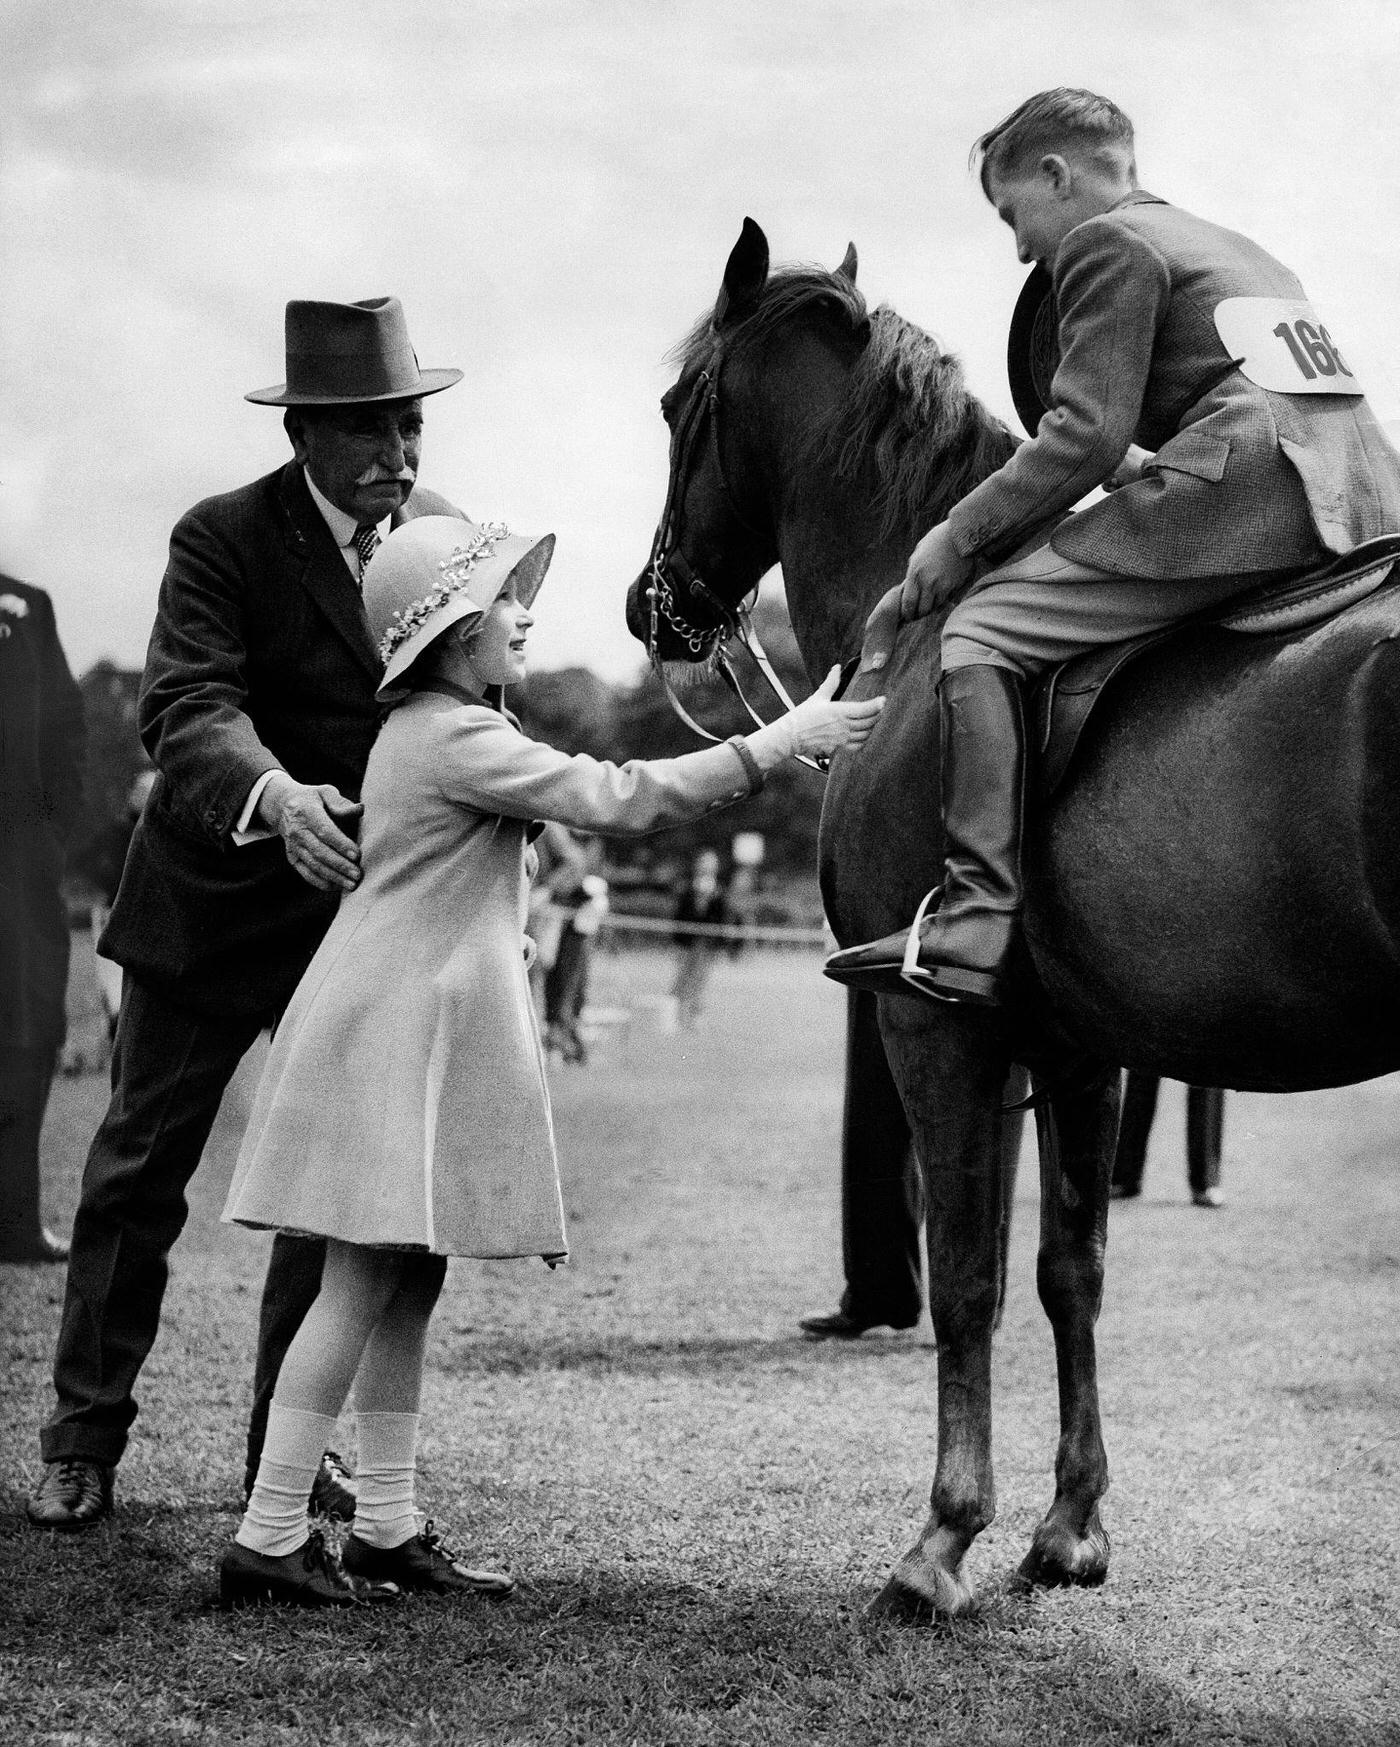 Queen Elizabeth II at Children's Horse Race, 1935